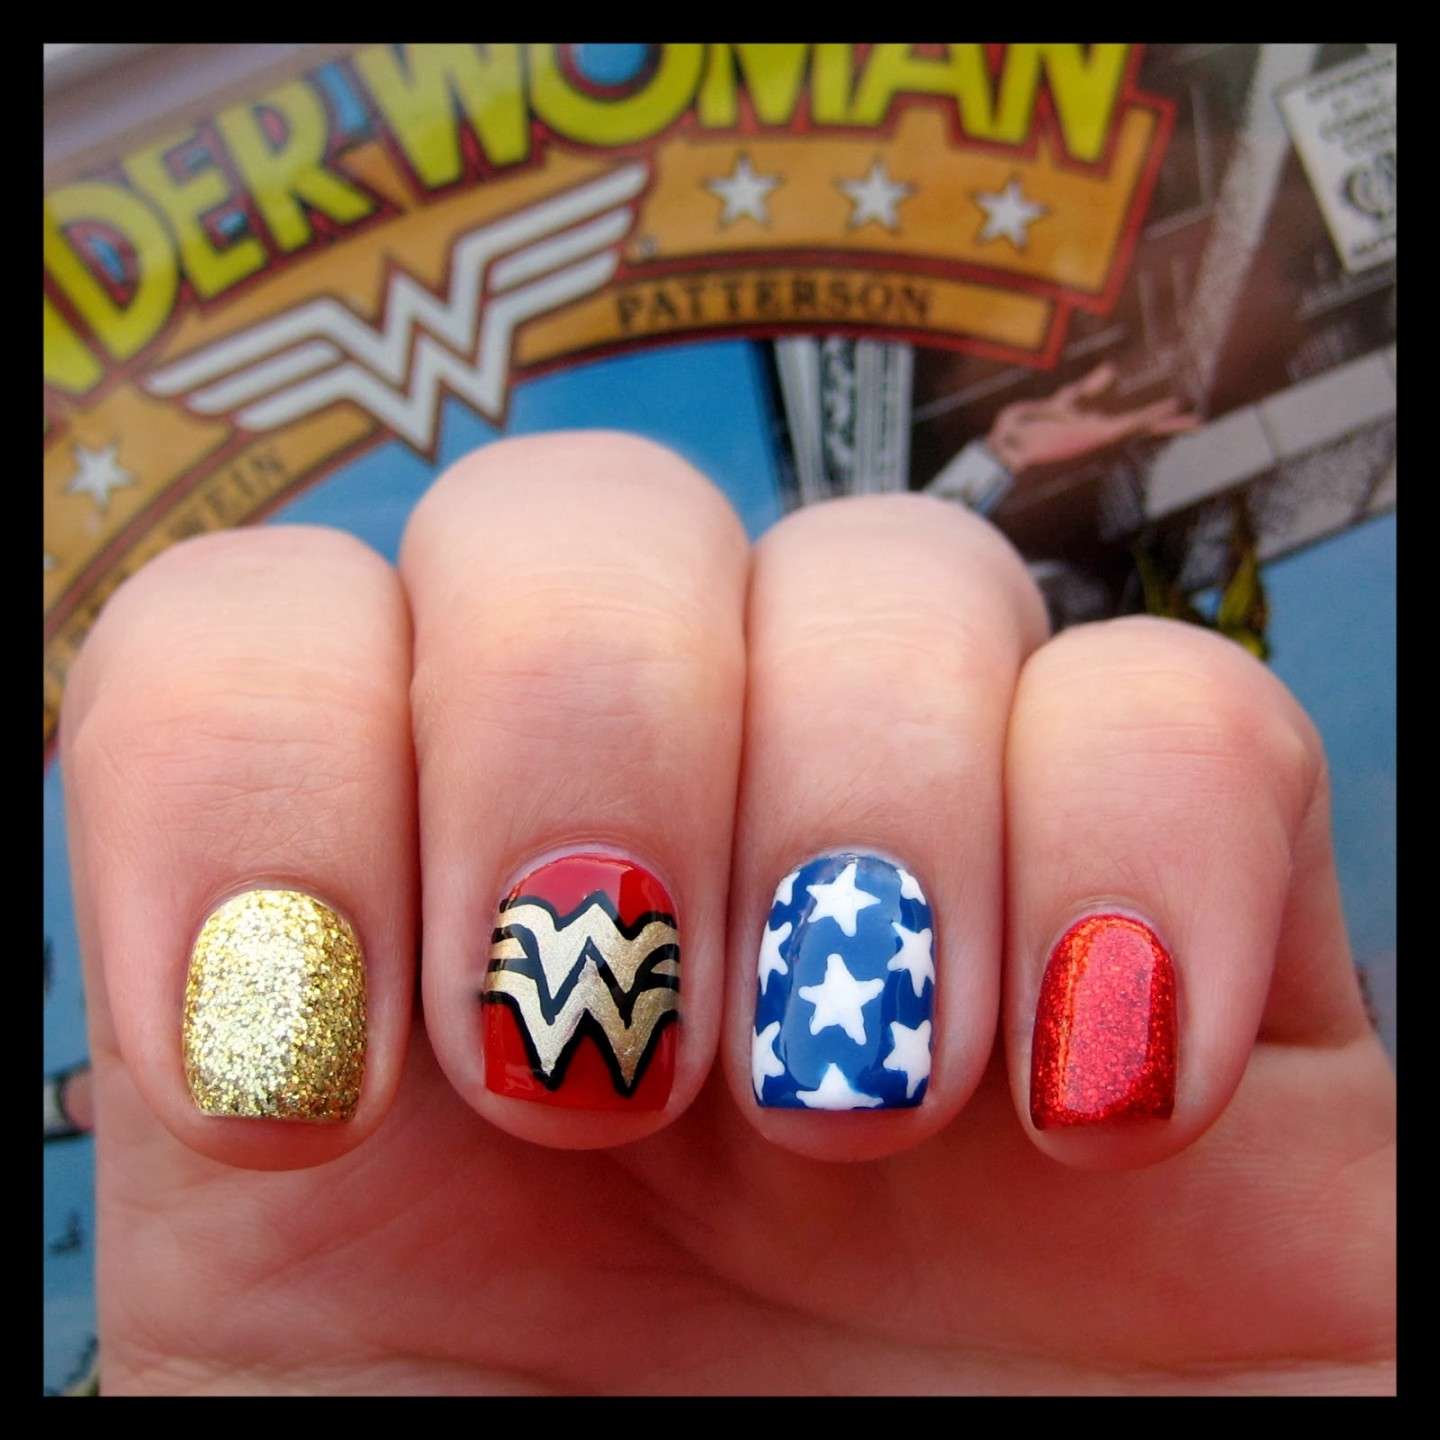 Wonder Woman nail art